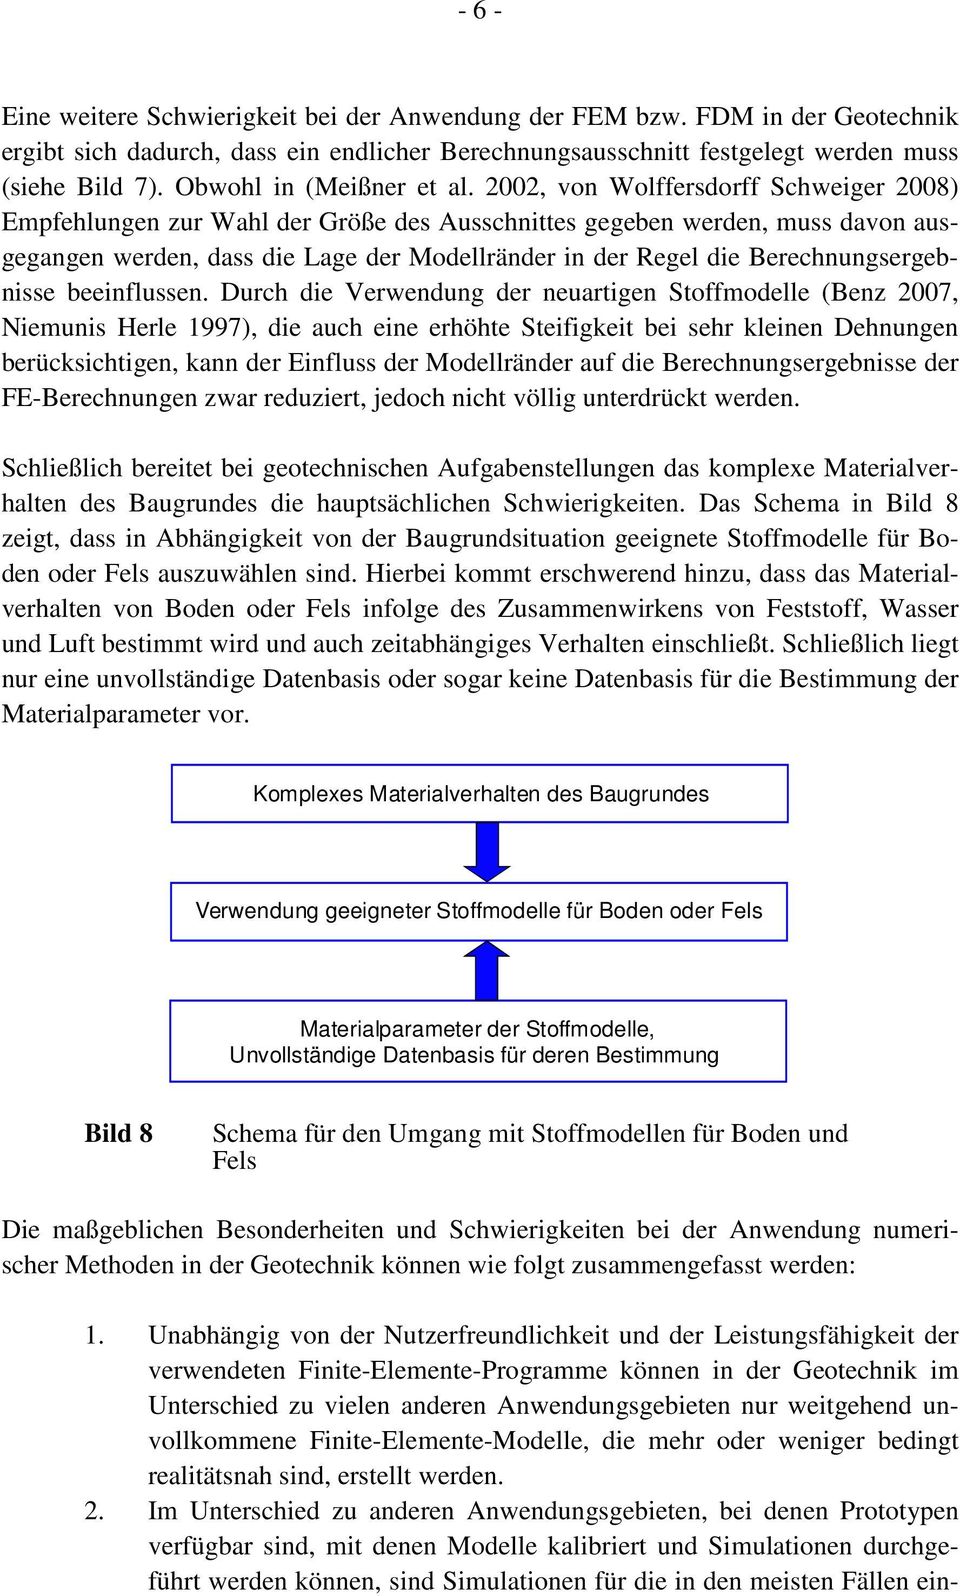 2002, von Wolffersdorff Schweiger 2008) Empfehlungen zur Wahl der Größe des Ausschnittes gegeben werden, muss davon ausgegangen werden, dass die Lage der Modellränder in der Regel die